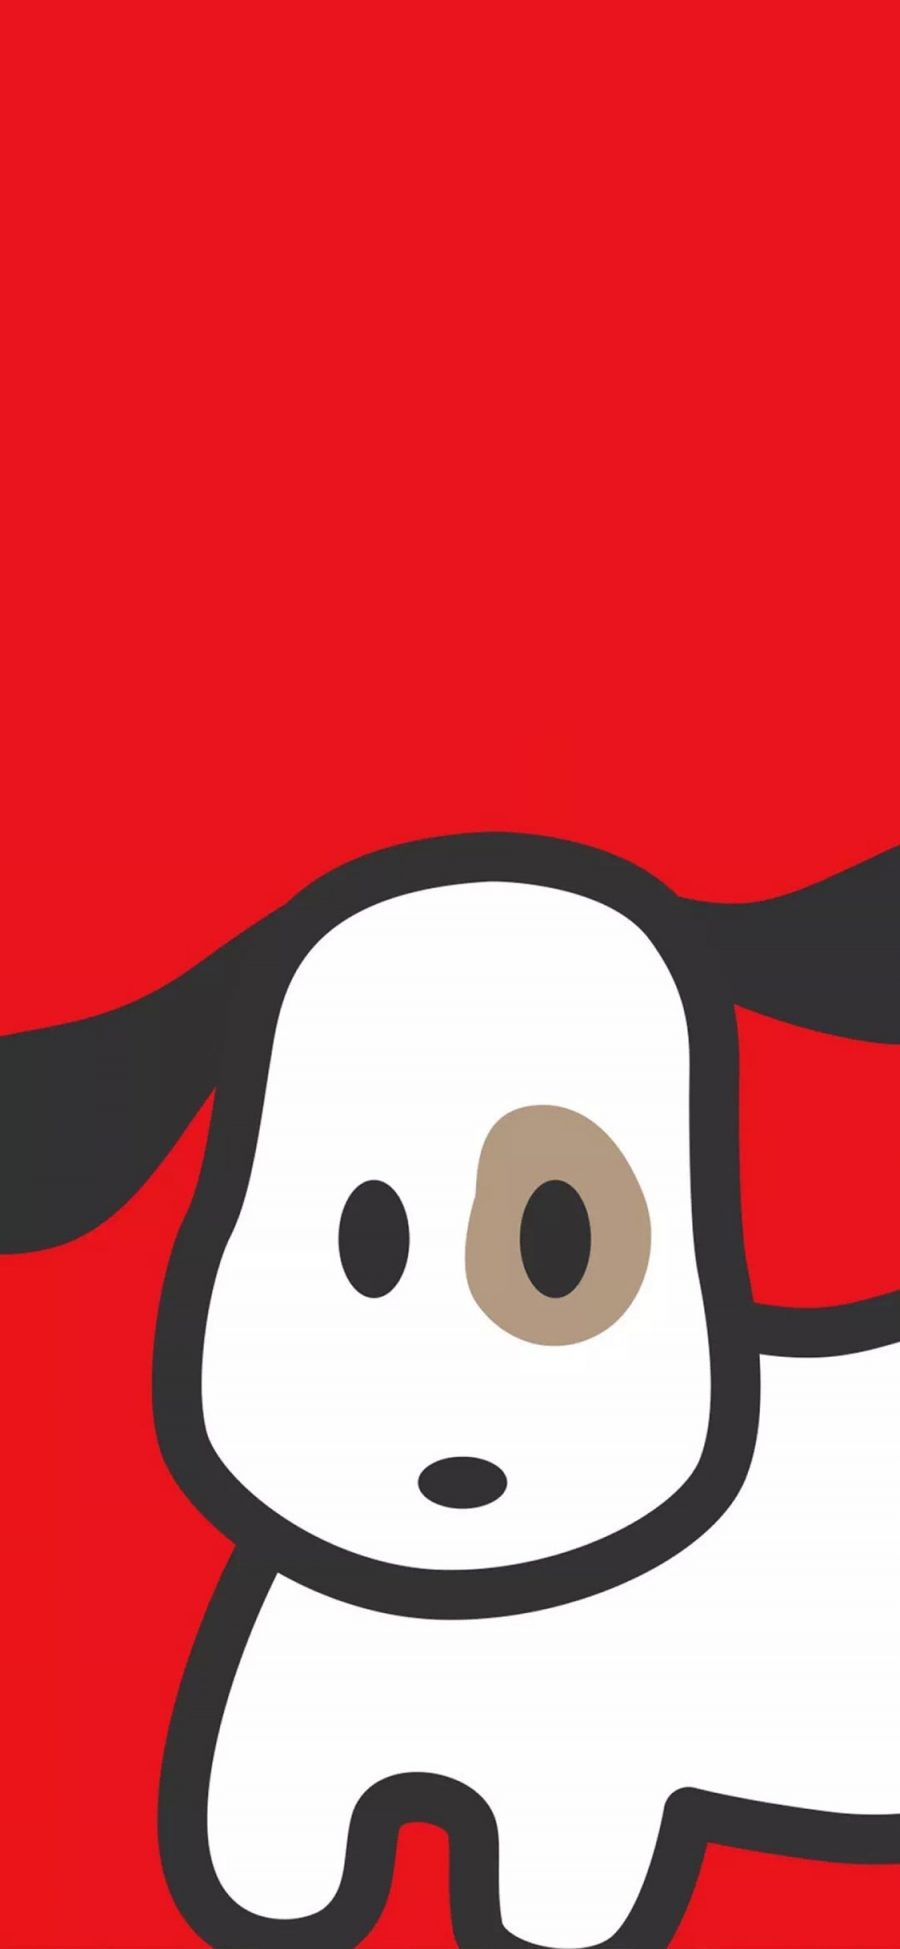 [2436×1125]红色背景 卡通 小狗 可爱 苹果手机动漫壁纸图片